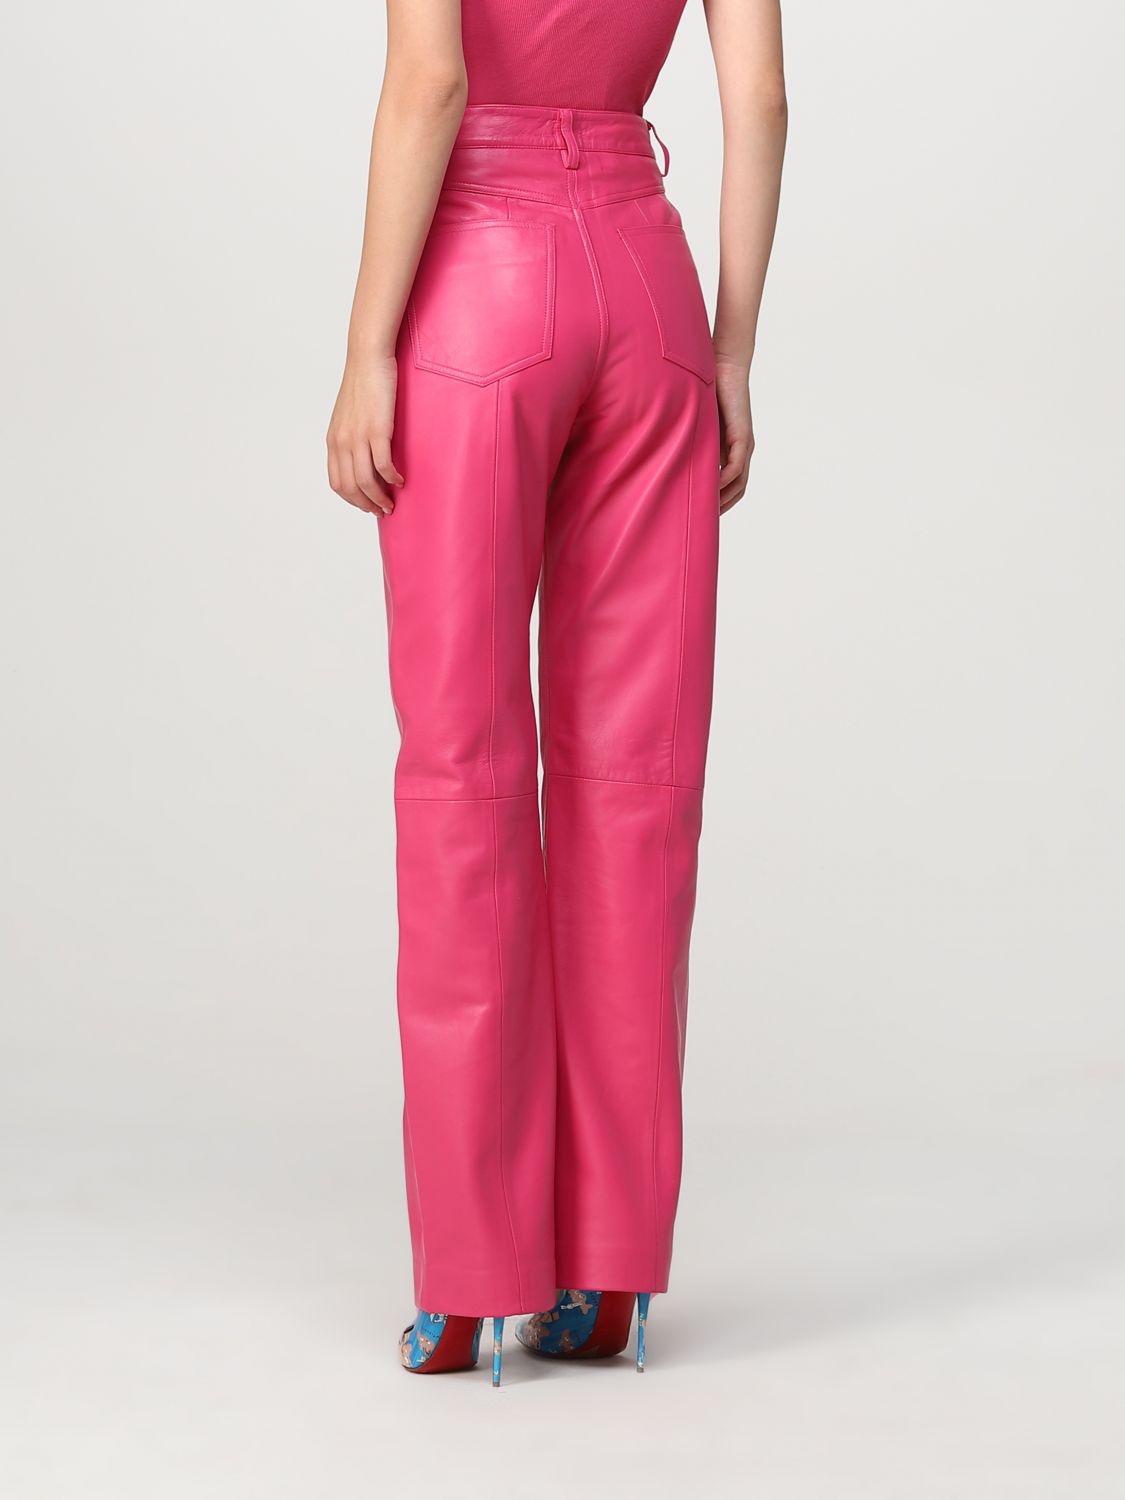 Pantalón Remain: Pantalón Remain para mujer rosa 2